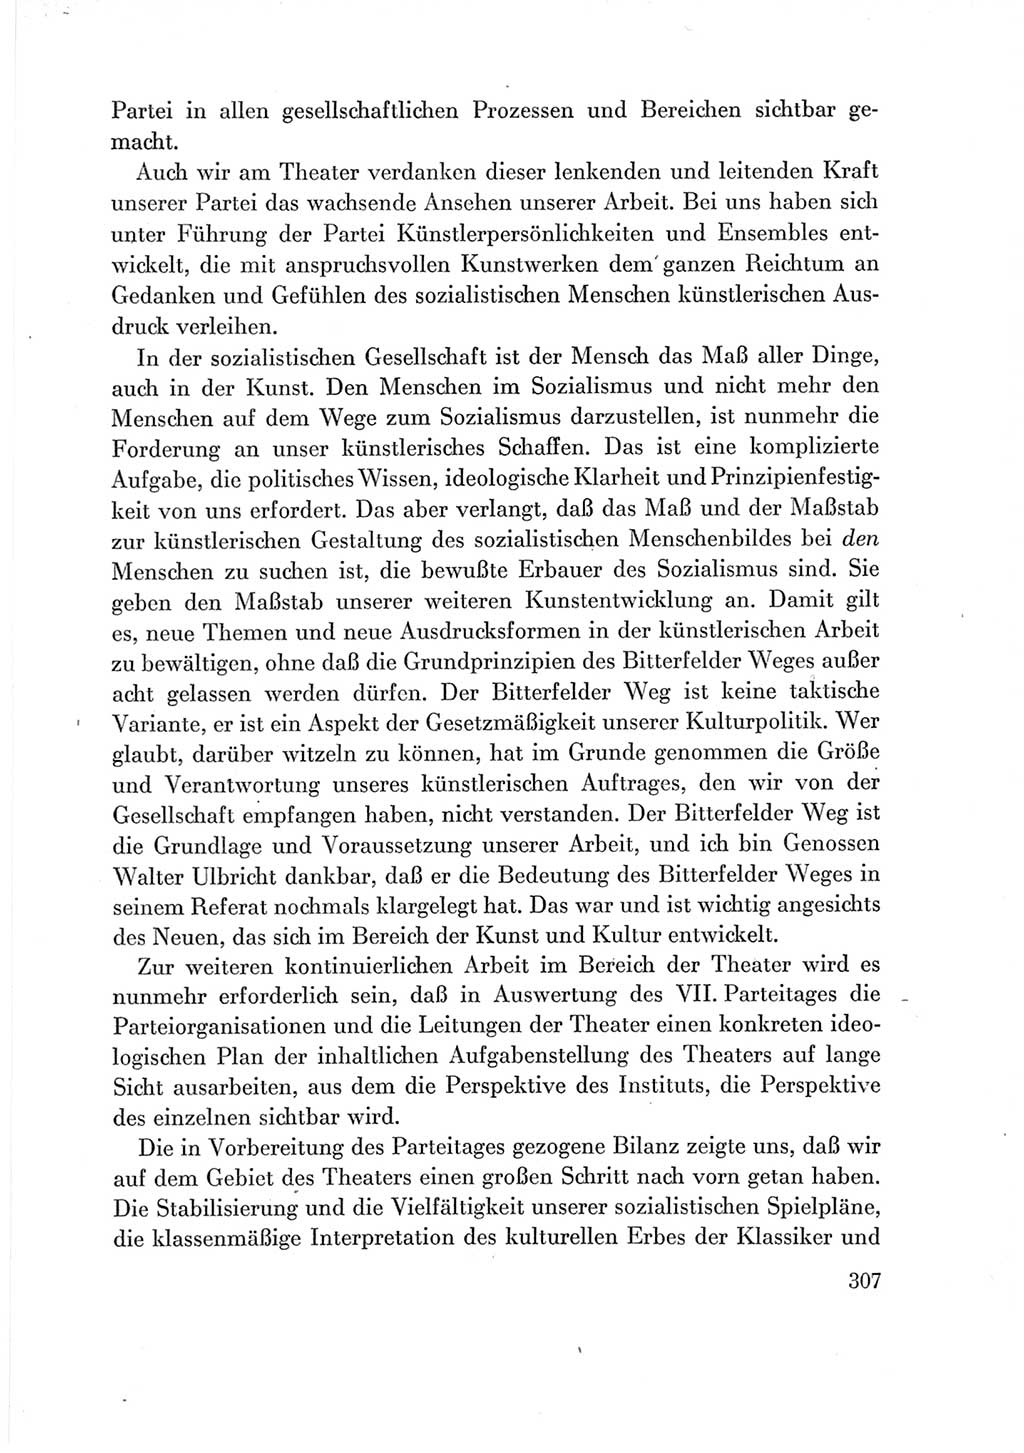 Protokoll der Verhandlungen des Ⅶ. Parteitages der Sozialistischen Einheitspartei Deutschlands (SED) [Deutsche Demokratische Republik (DDR)] 1967, Band Ⅲ, Seite 307 (Prot. Verh. Ⅶ. PT SED DDR 1967, Bd. Ⅲ, S. 307)